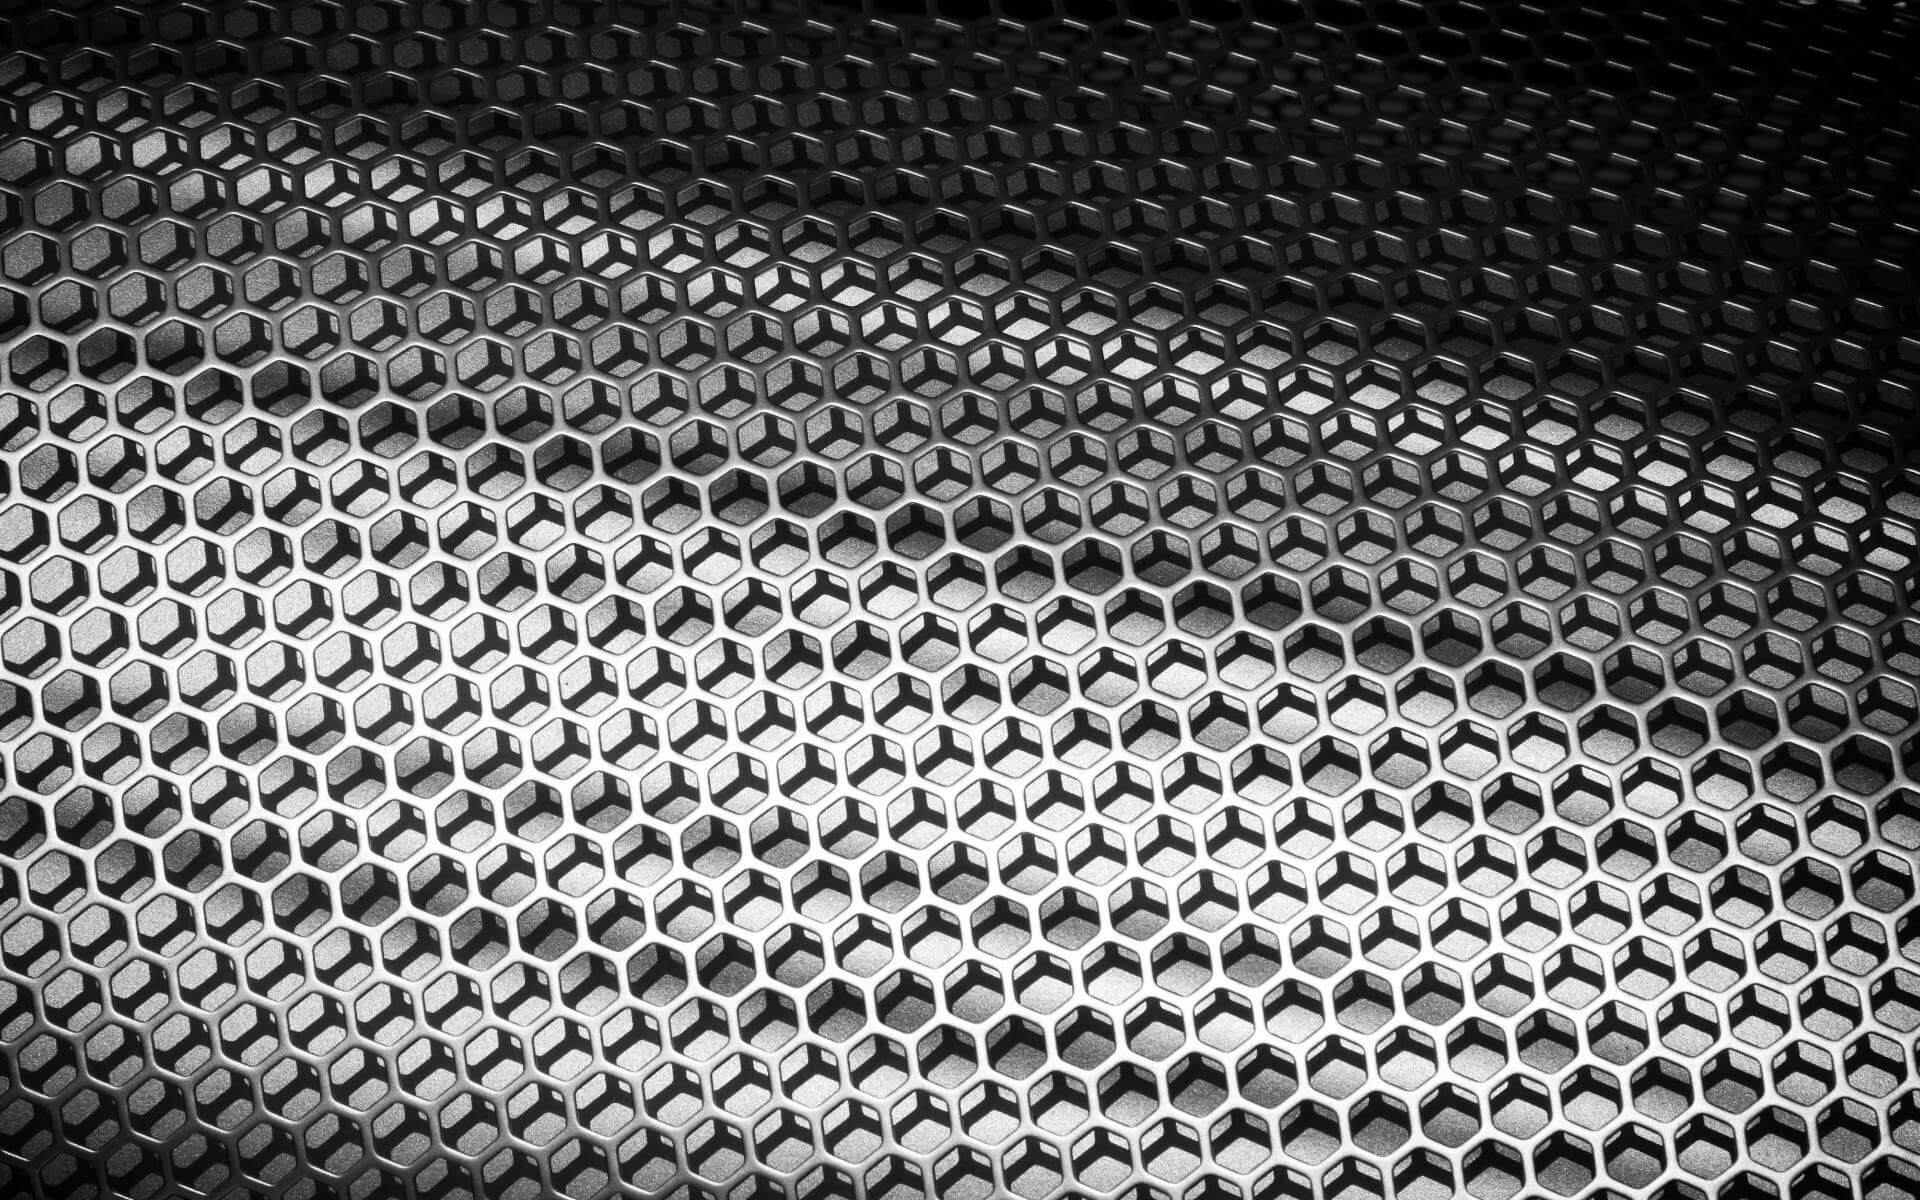 Nye nanosite forbedre stoffet levering og sårtilheling